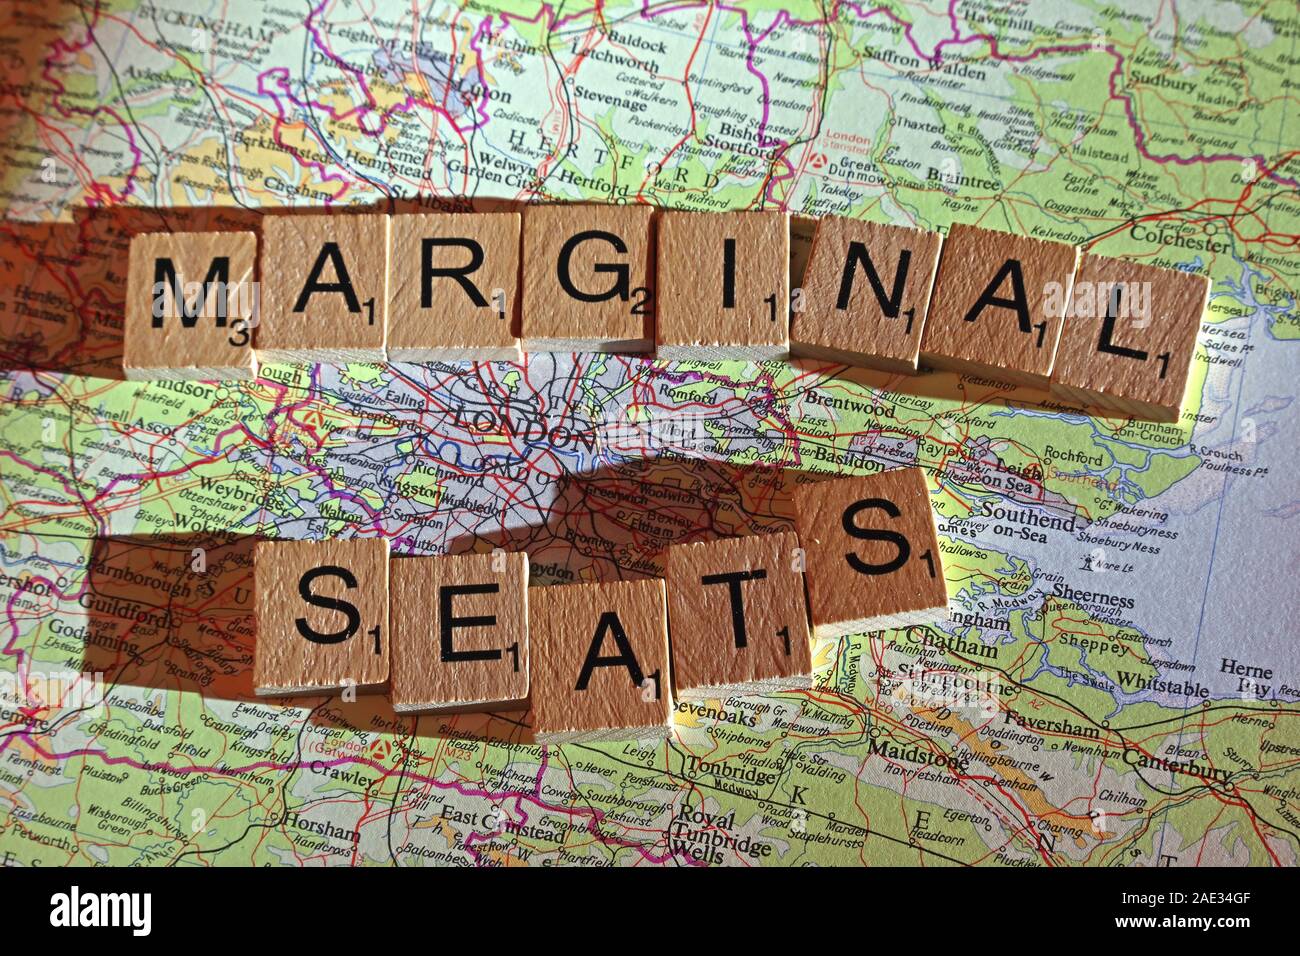 Rn Sitze Dinkel in Scrabble Buchstaben auf einem UK Karte - allgemeine Wahlen, Wahlen, Parteien, Politiker, Parteien, Ansprüche, Zweifel Stockfoto